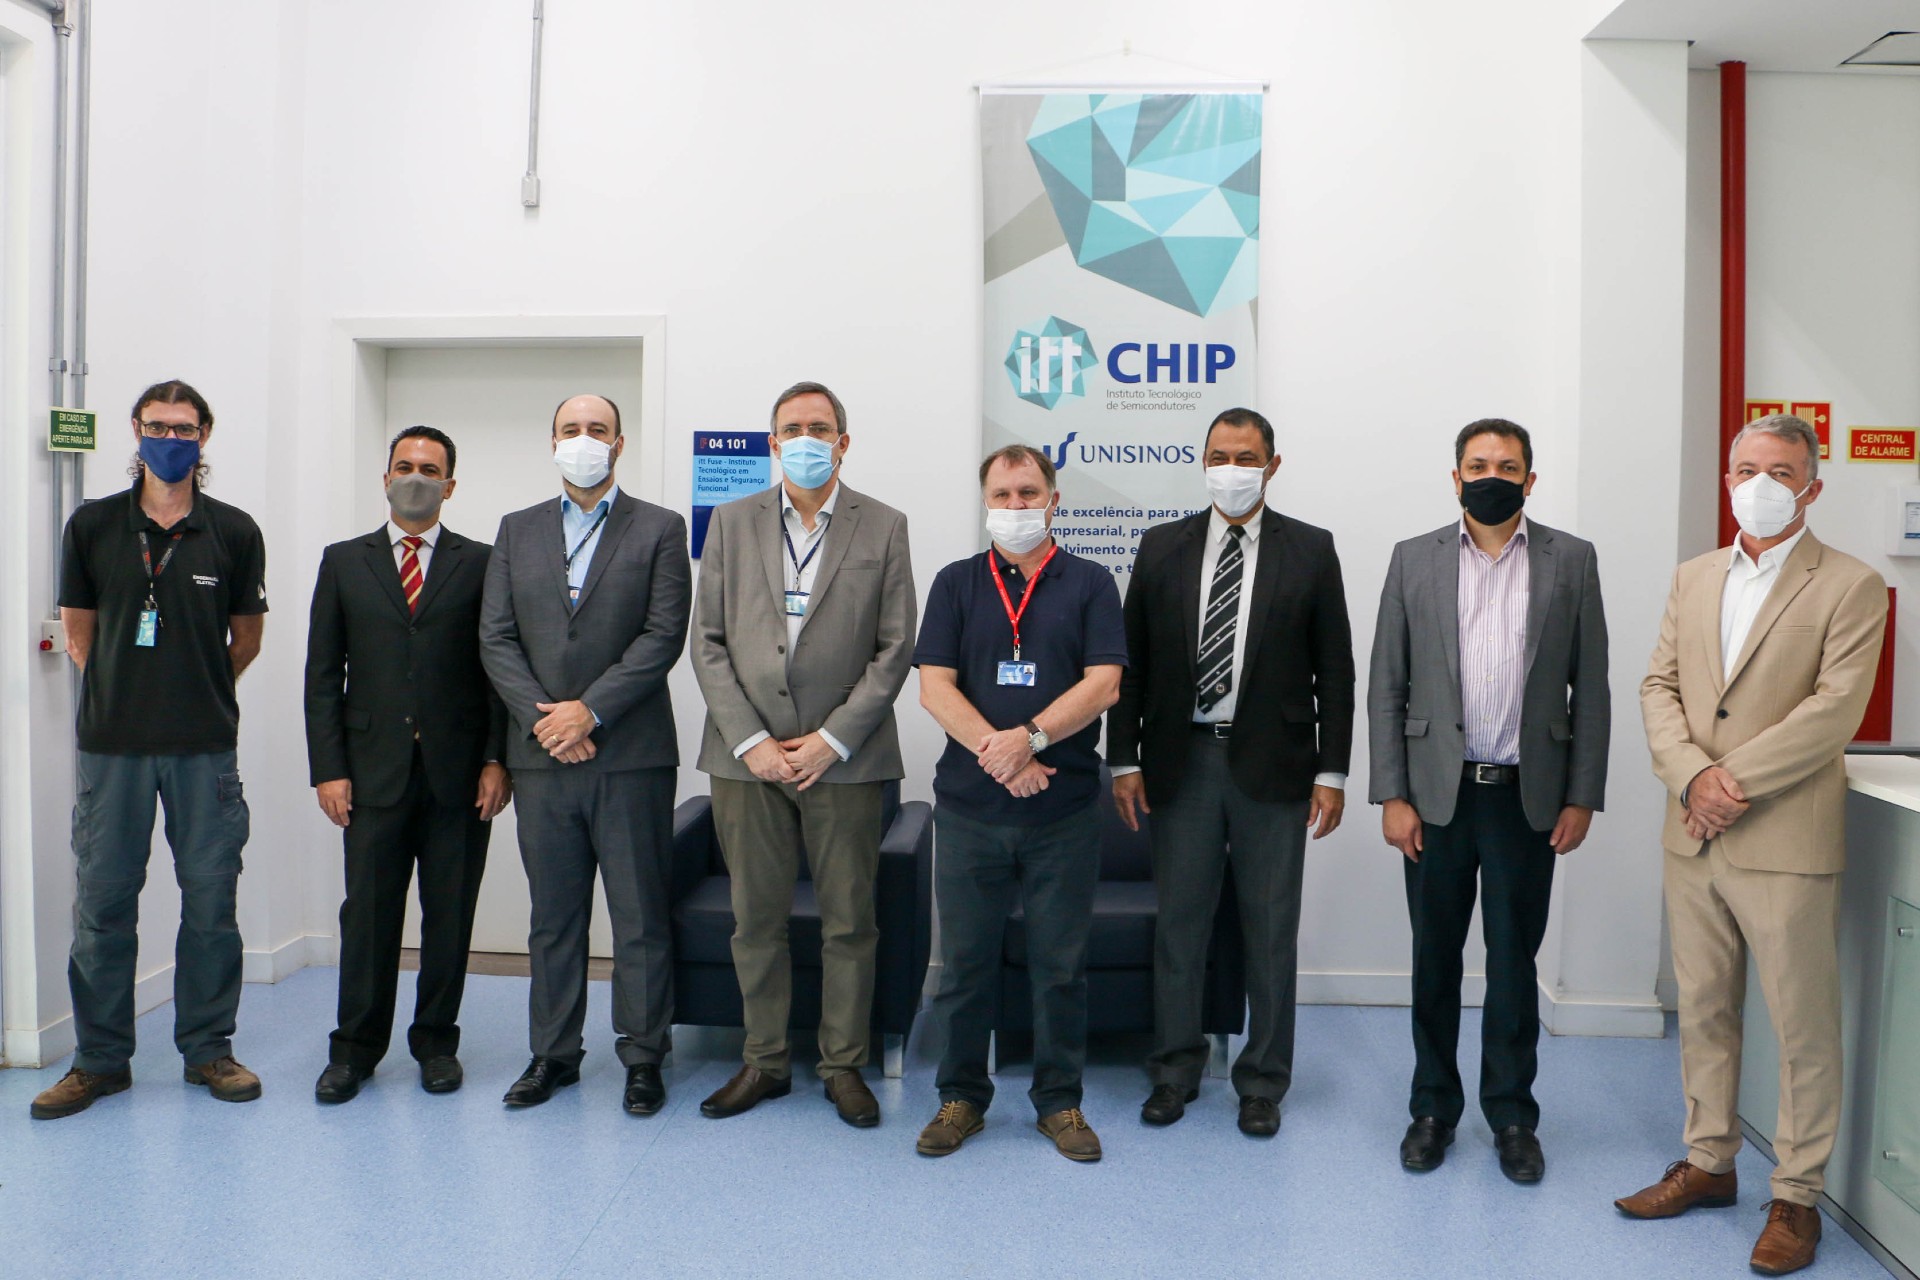 Vice-reitor da Unisinos e diretor da Unitec recebem visita dos reitores da UFRGS, do ITA e de diretor da Embraer